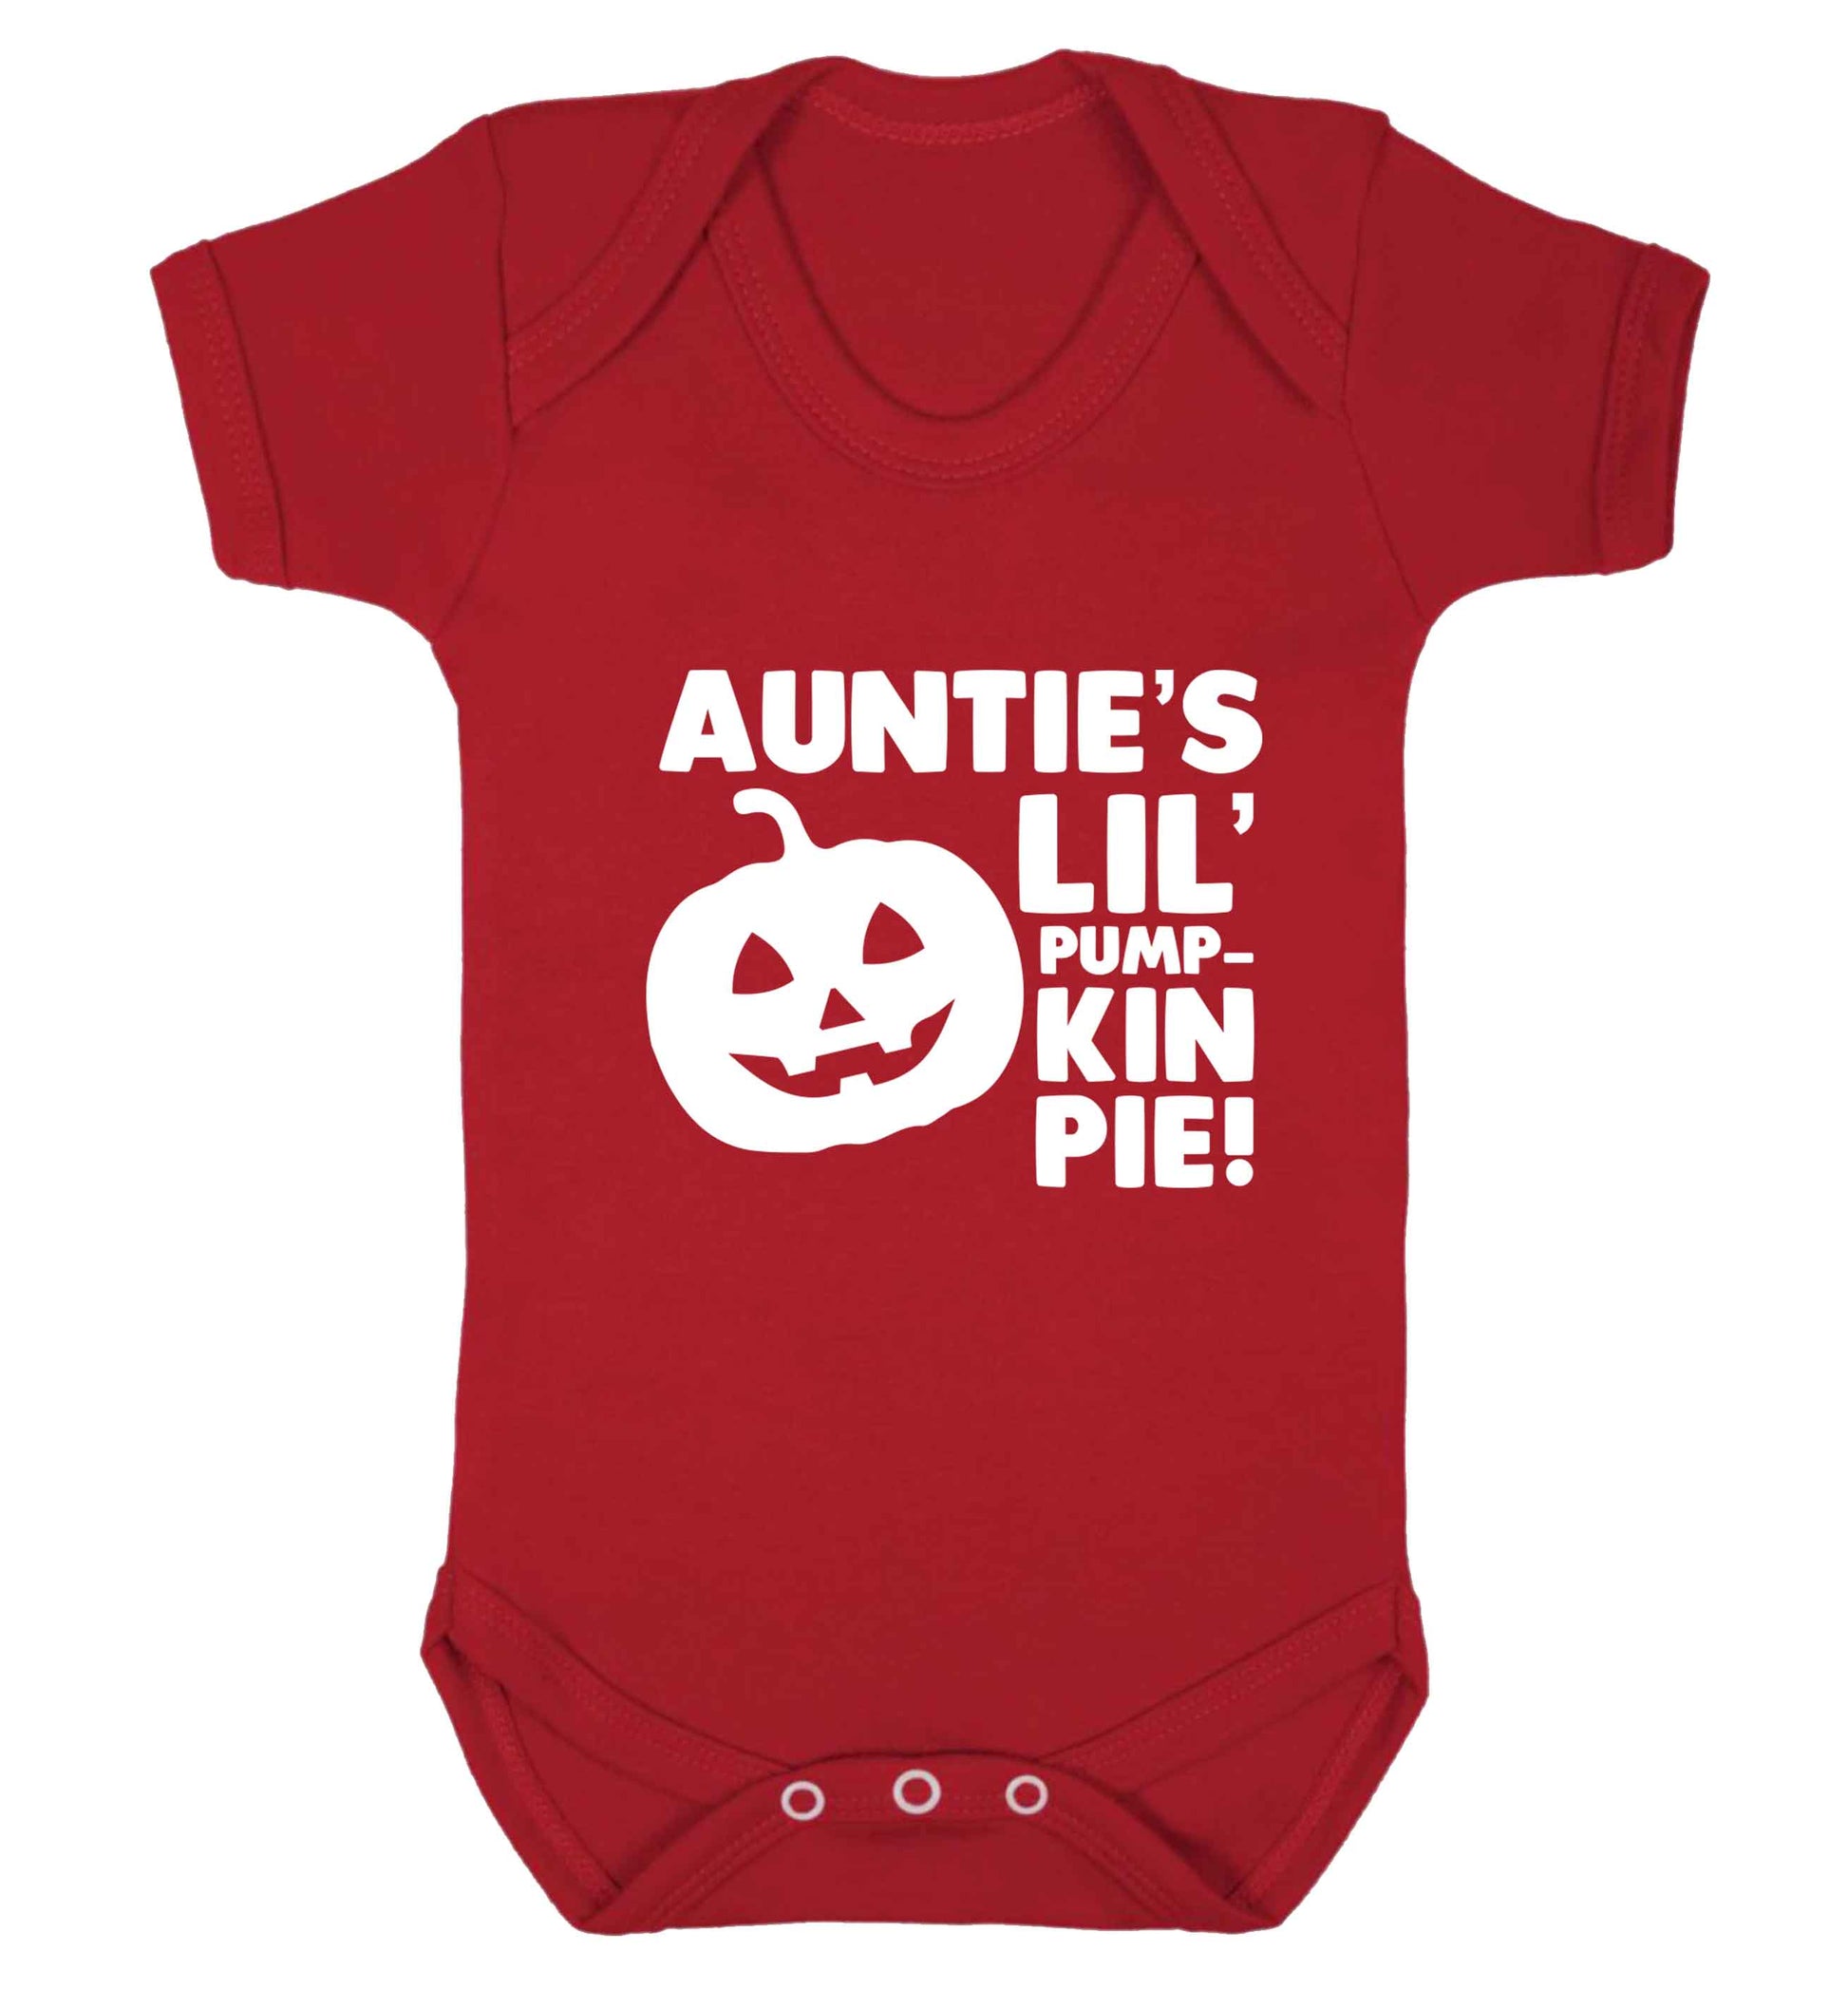 Auntie's lil' pumpkin pie baby vest red 18-24 months